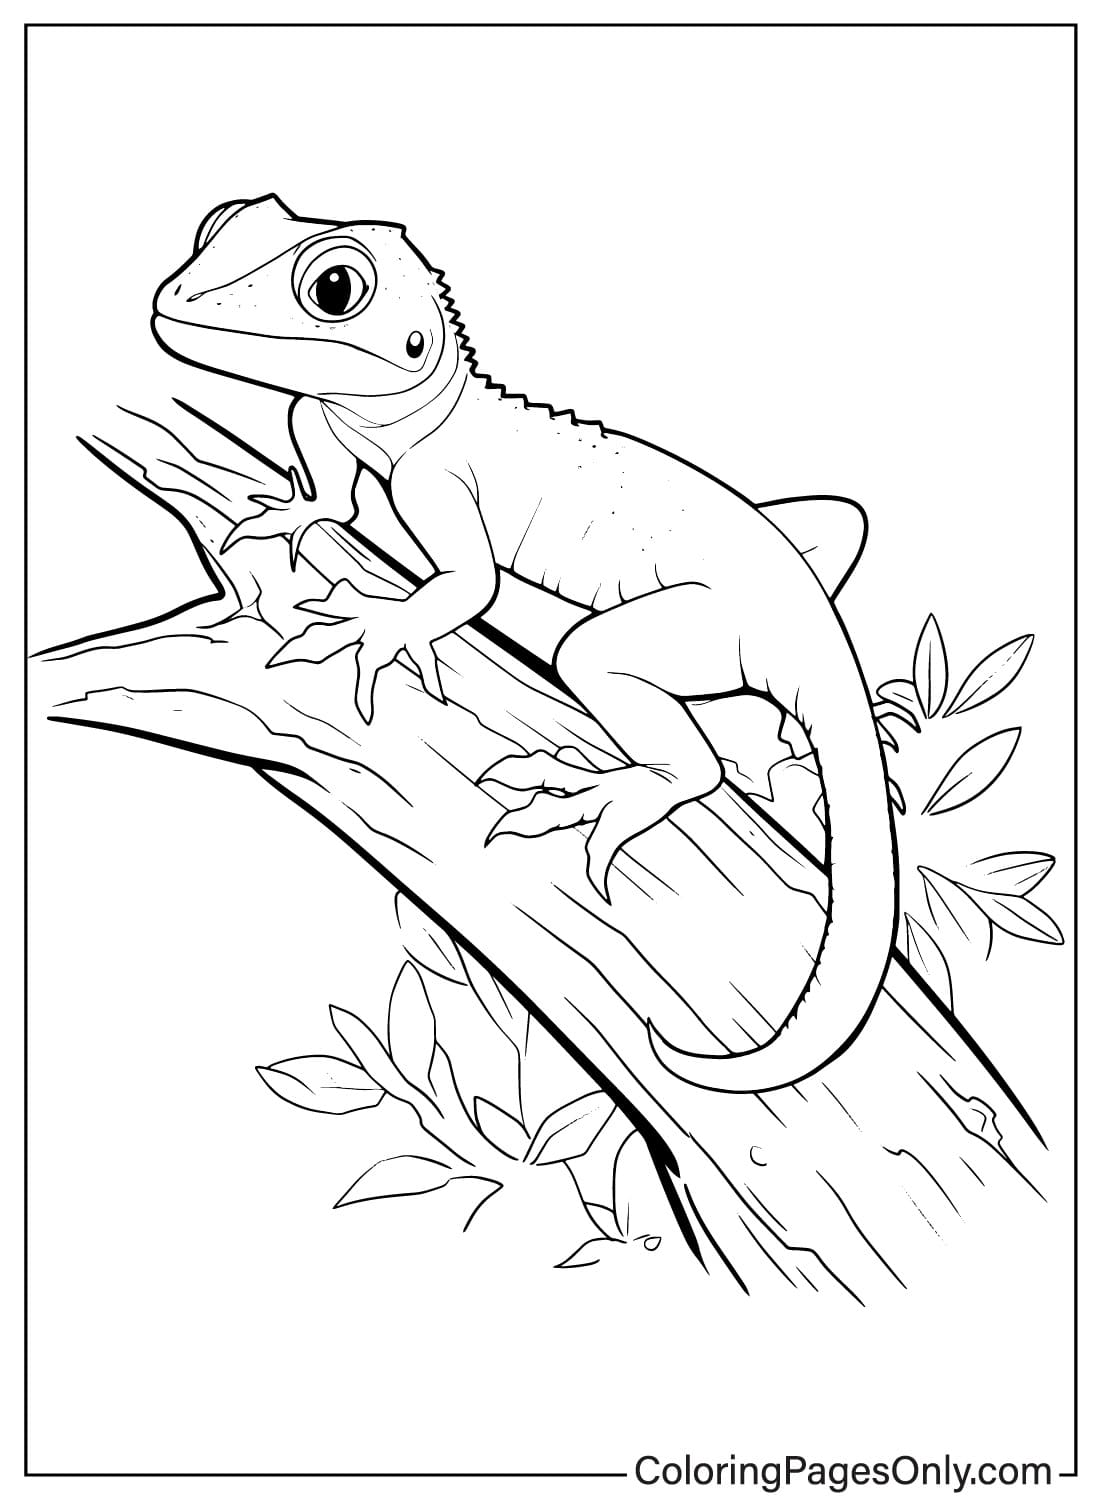 Página para colorir de lagarto para imprimir